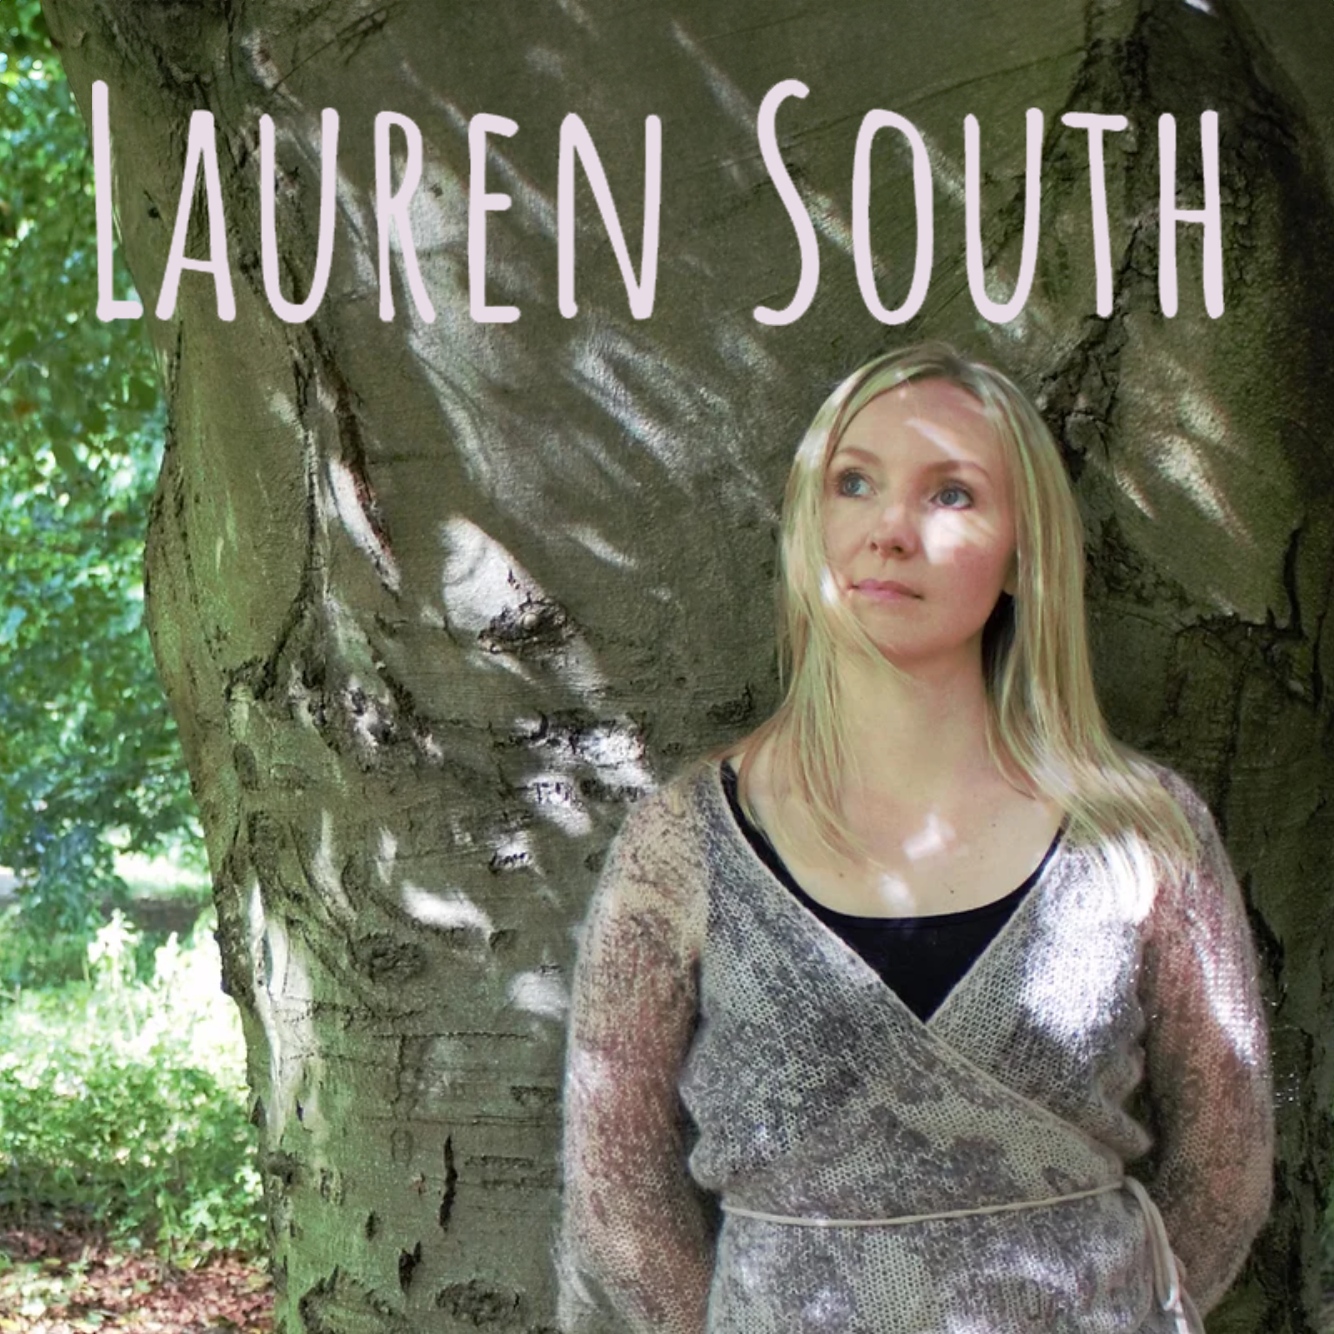 Lauren South